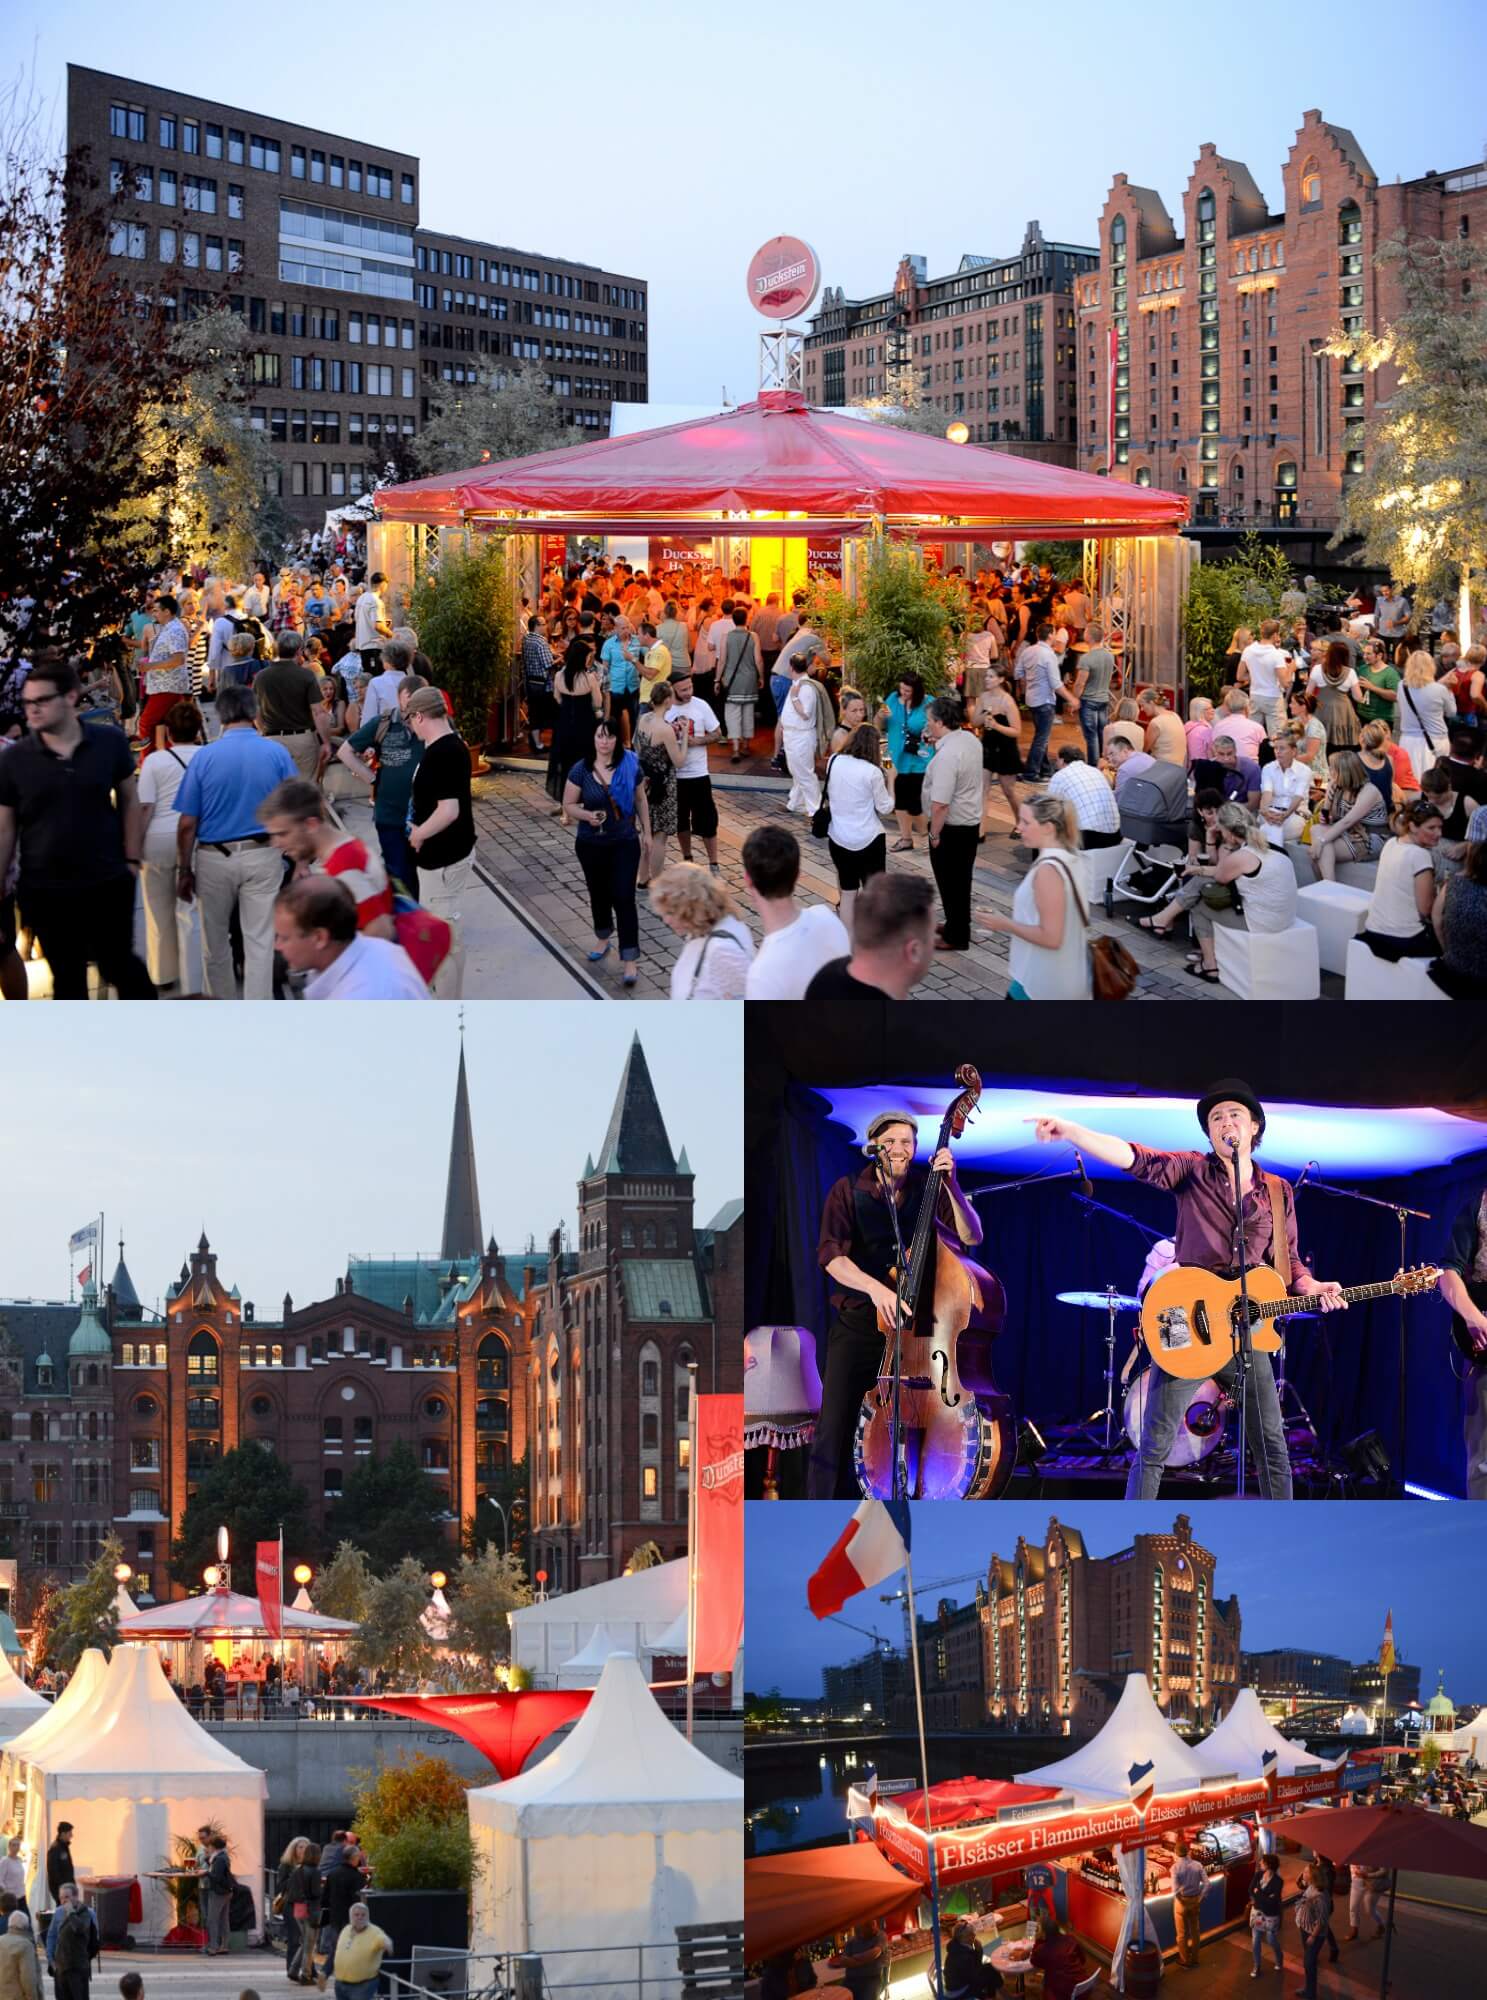 Das Duckstein Festival ist ein echter Allrounder! Freu dich auf Kunst, Kultur & viele kulinarische Highlights! 😍